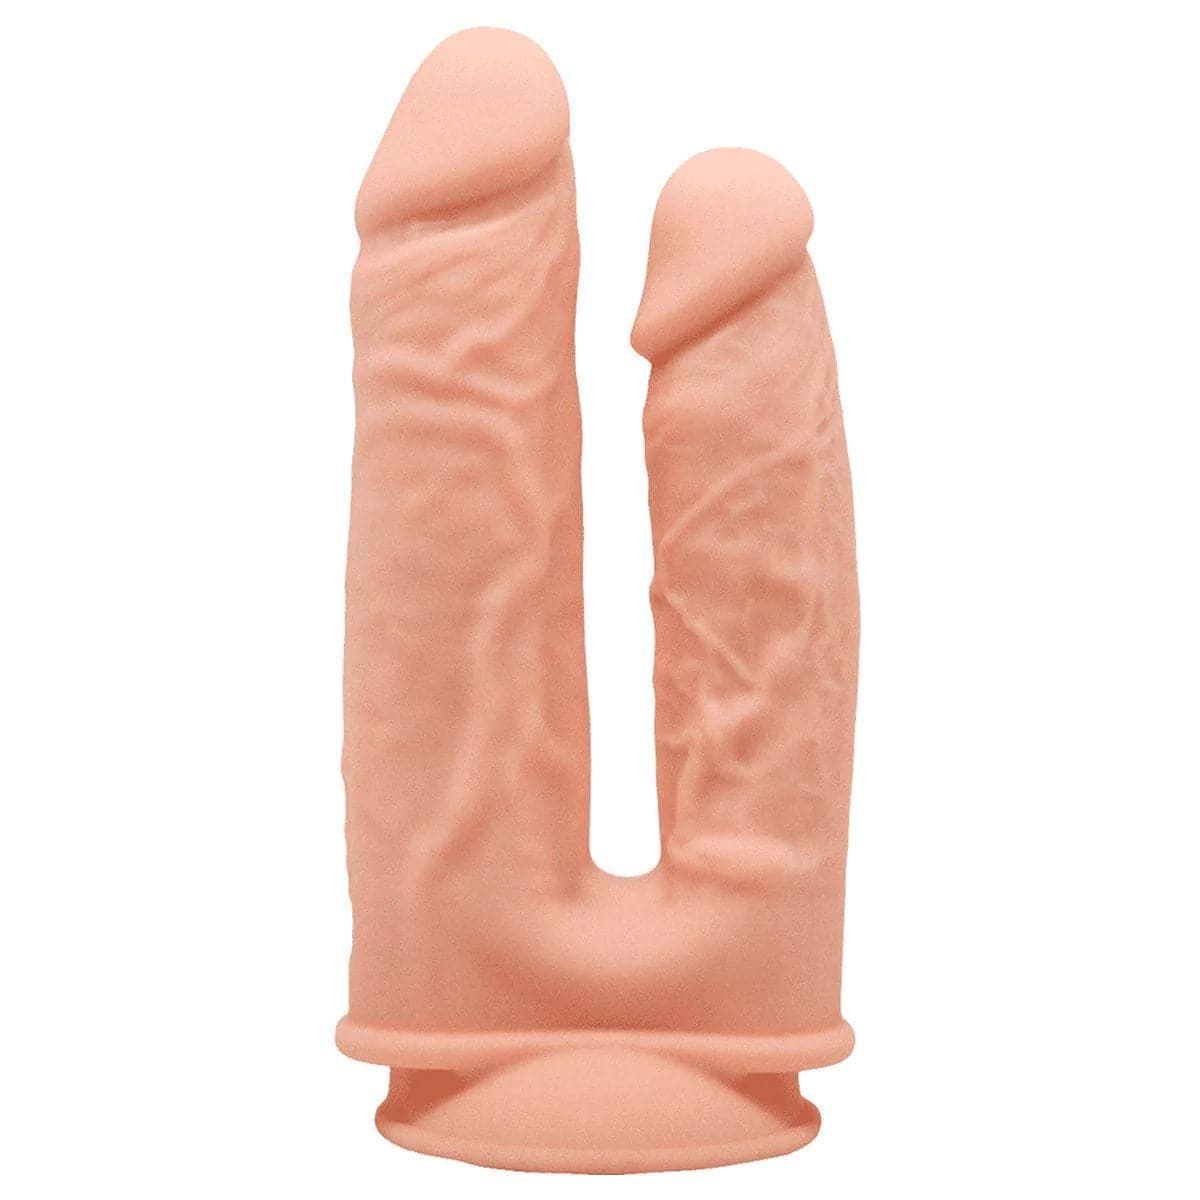 Ricooo, Dildo Duplo Vaginal e Anal, 20cm Ø3.5cm - Pérola SexShop